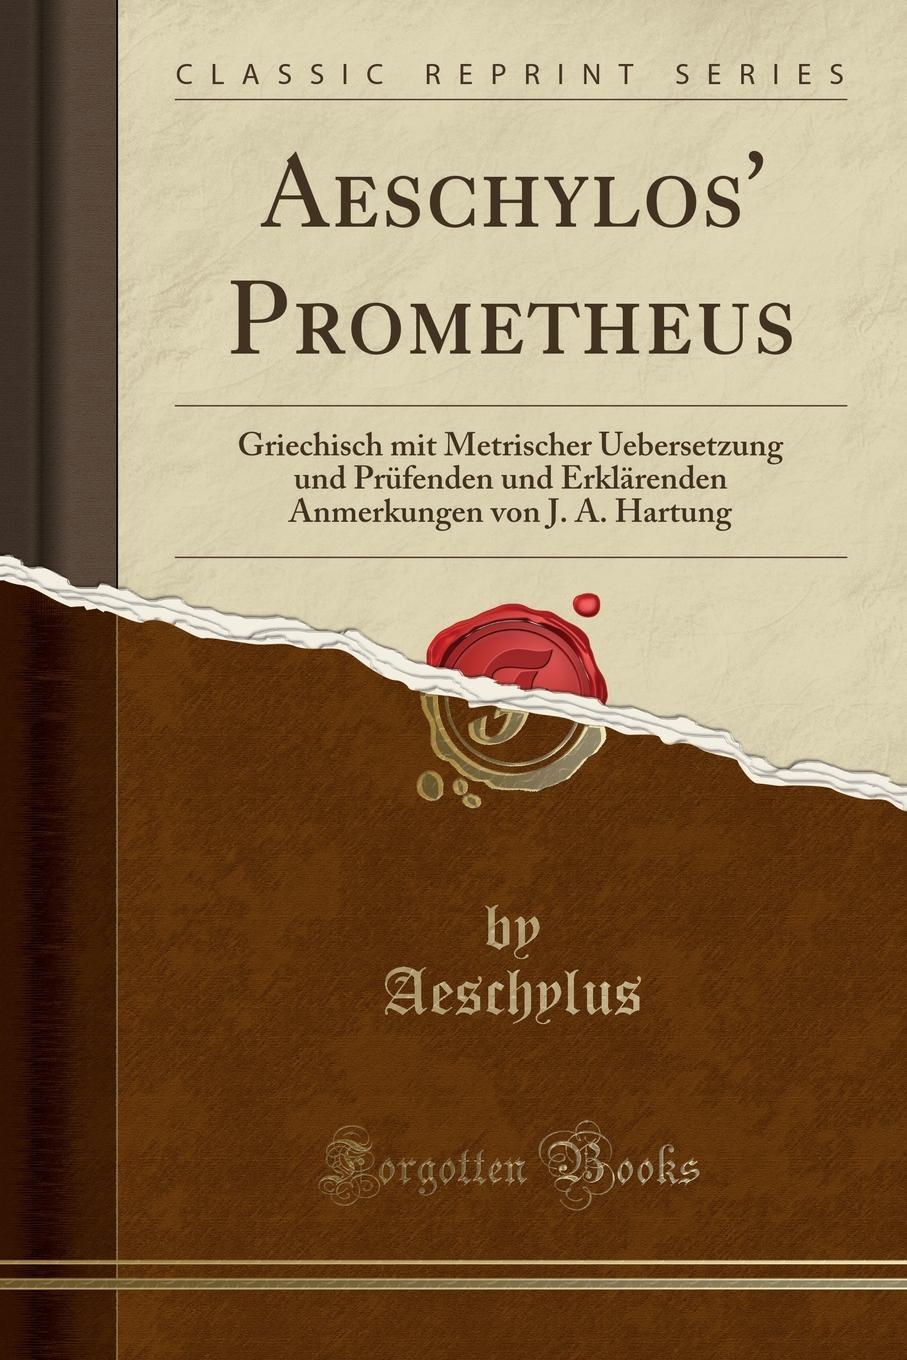 Aeschylos. Prometheus. Griechisch mit Metrischer Uebersetzung und Prufenden und Erklarenden Anmerkungen von J. A. Hartung (Classic Reprint)